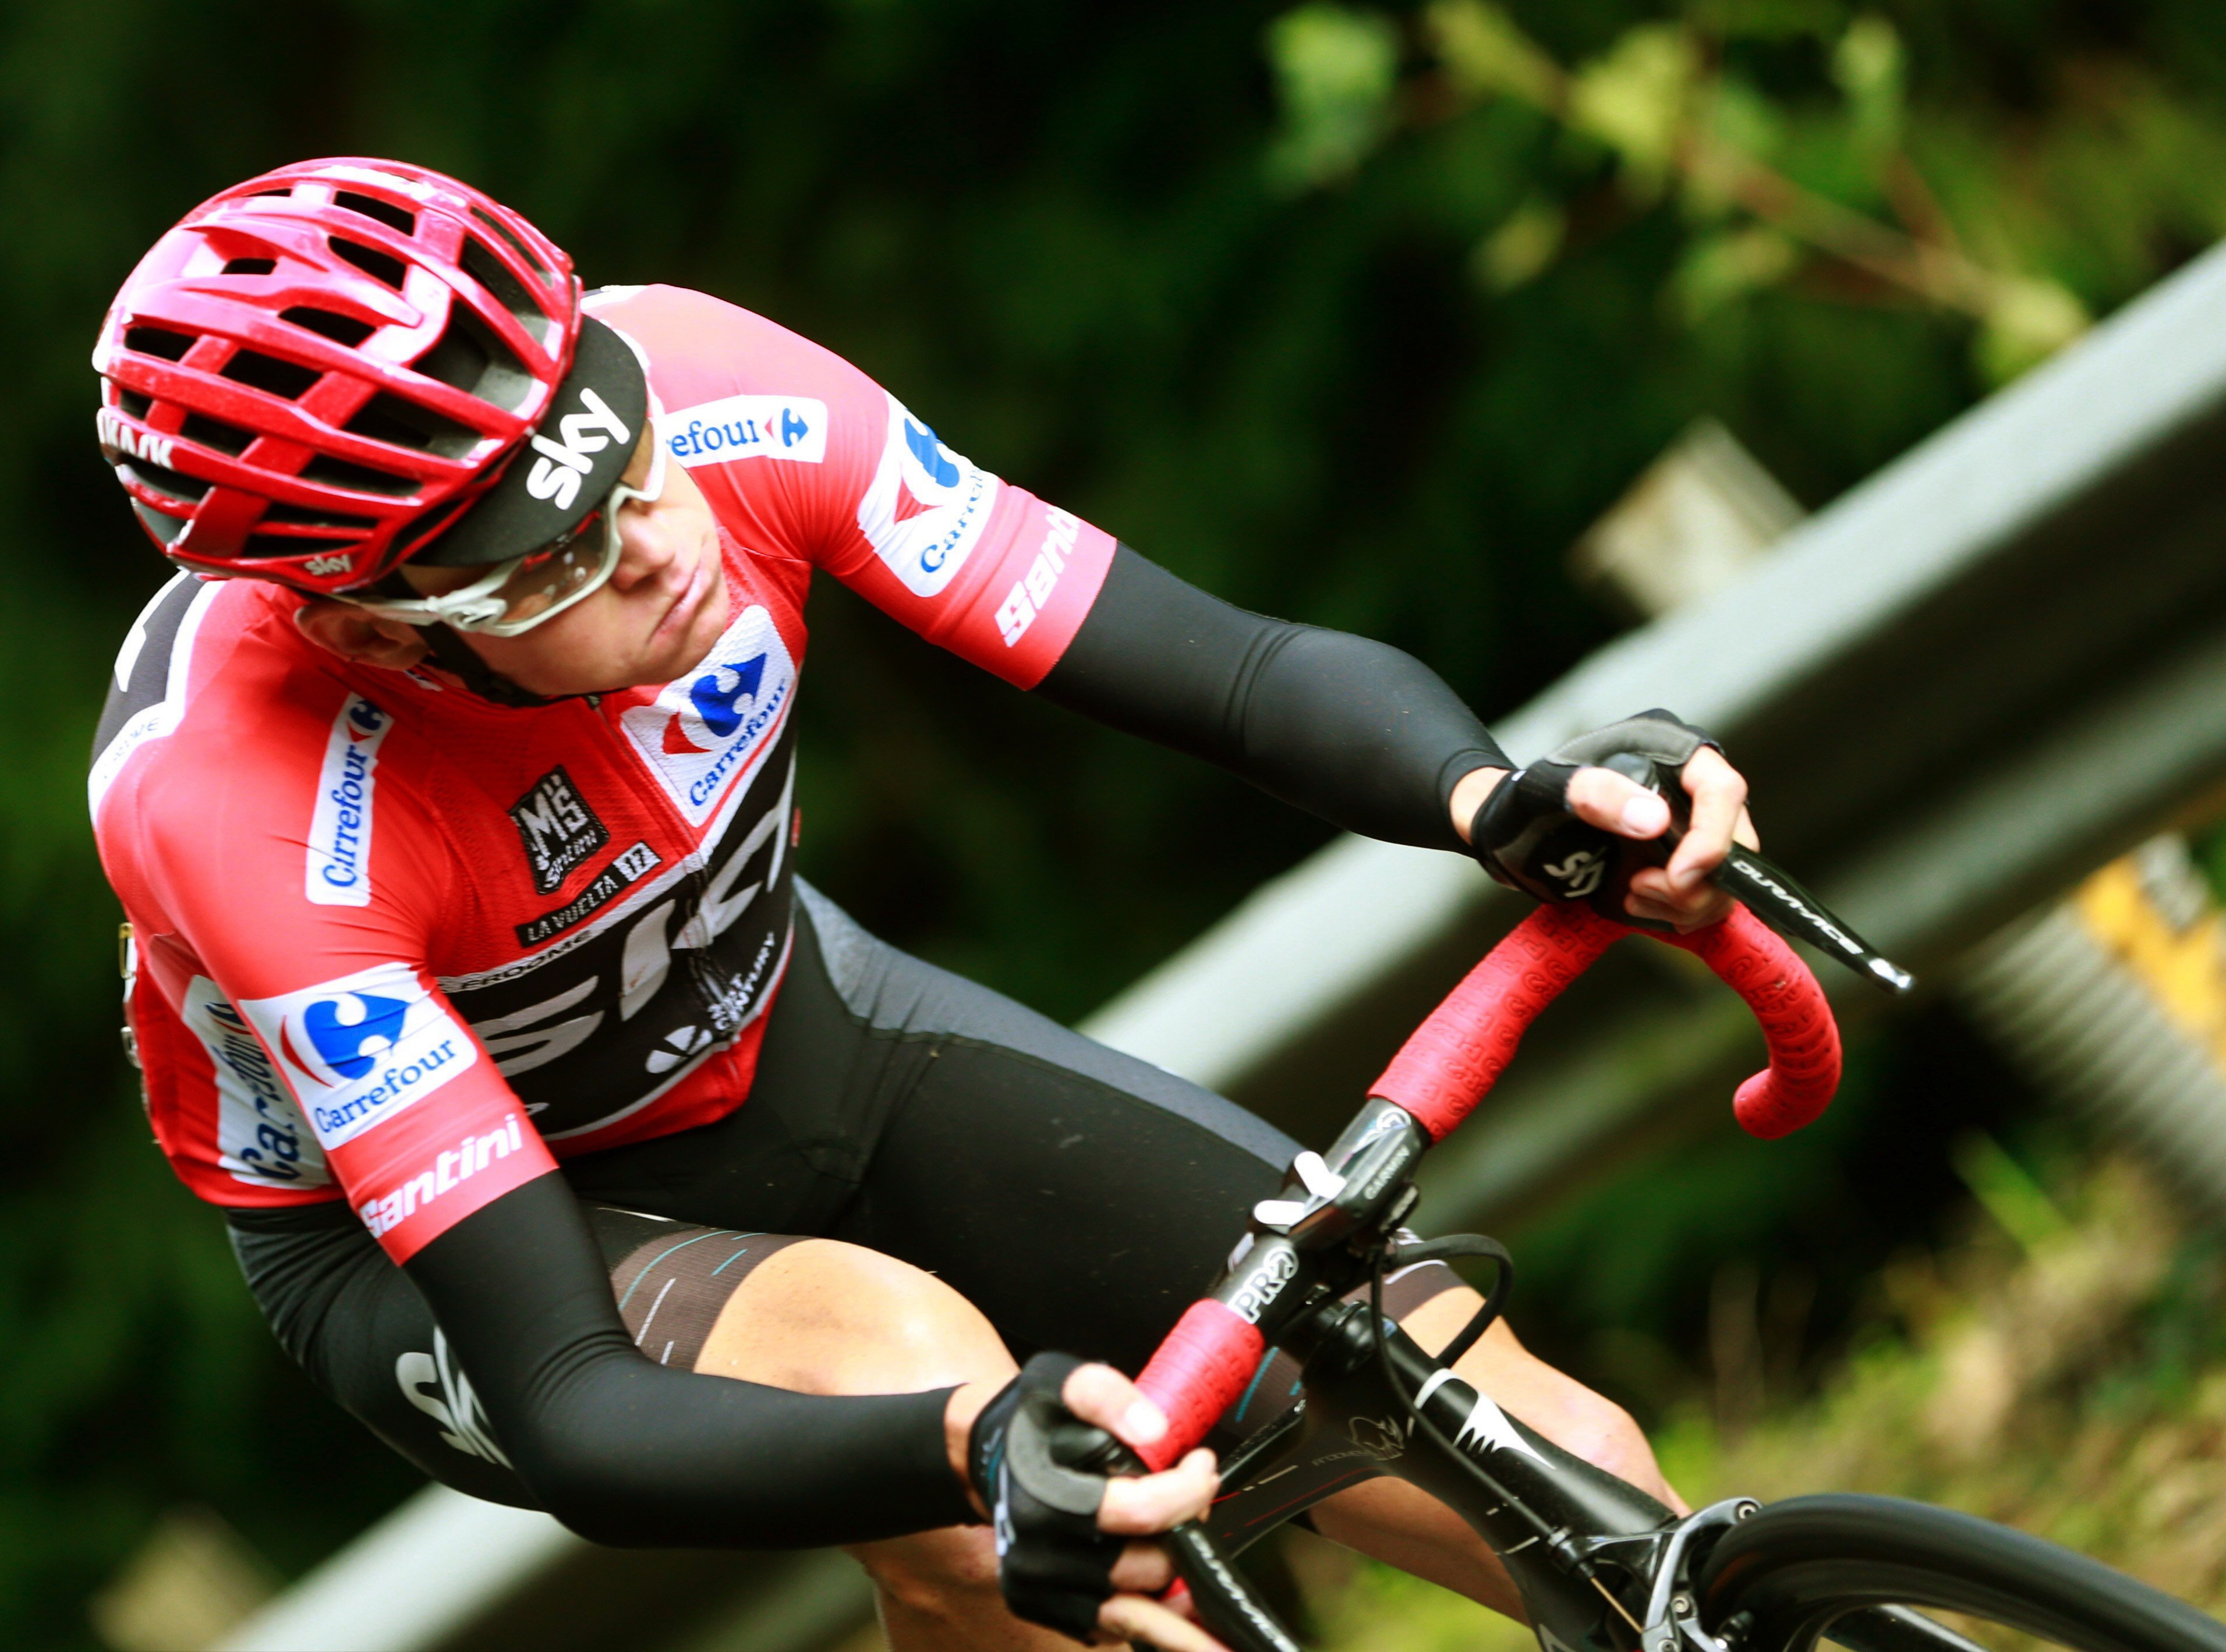 Froome va donar positiu per salbutamol a la Vuelta 2017